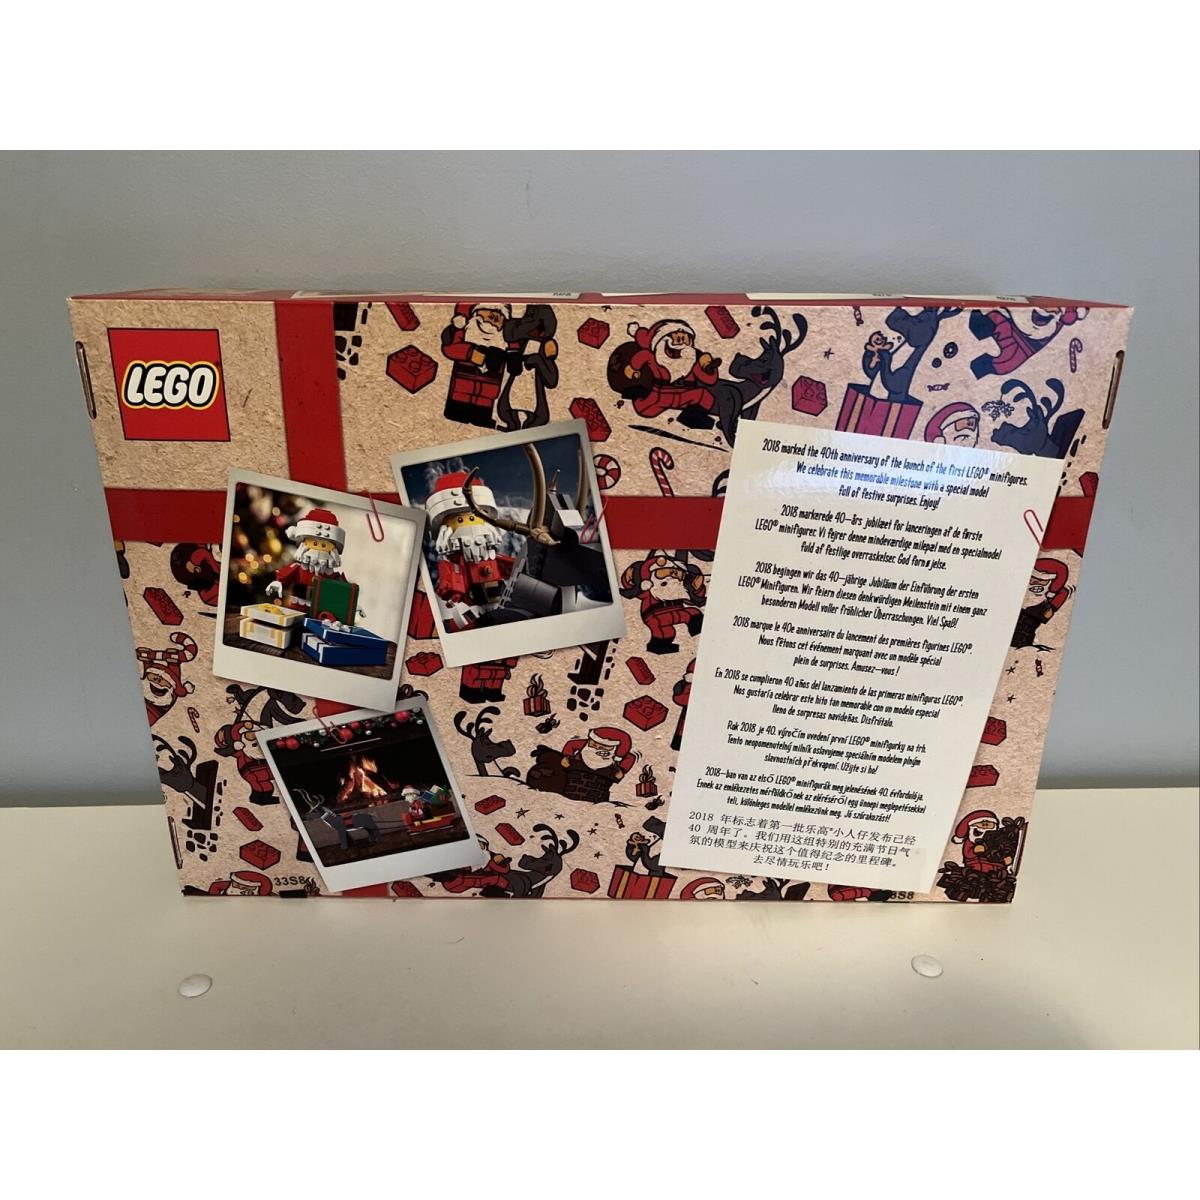 Lego 4002018 Employee Only Christmas Set 2018 Gift 40 Years Of Minifigures